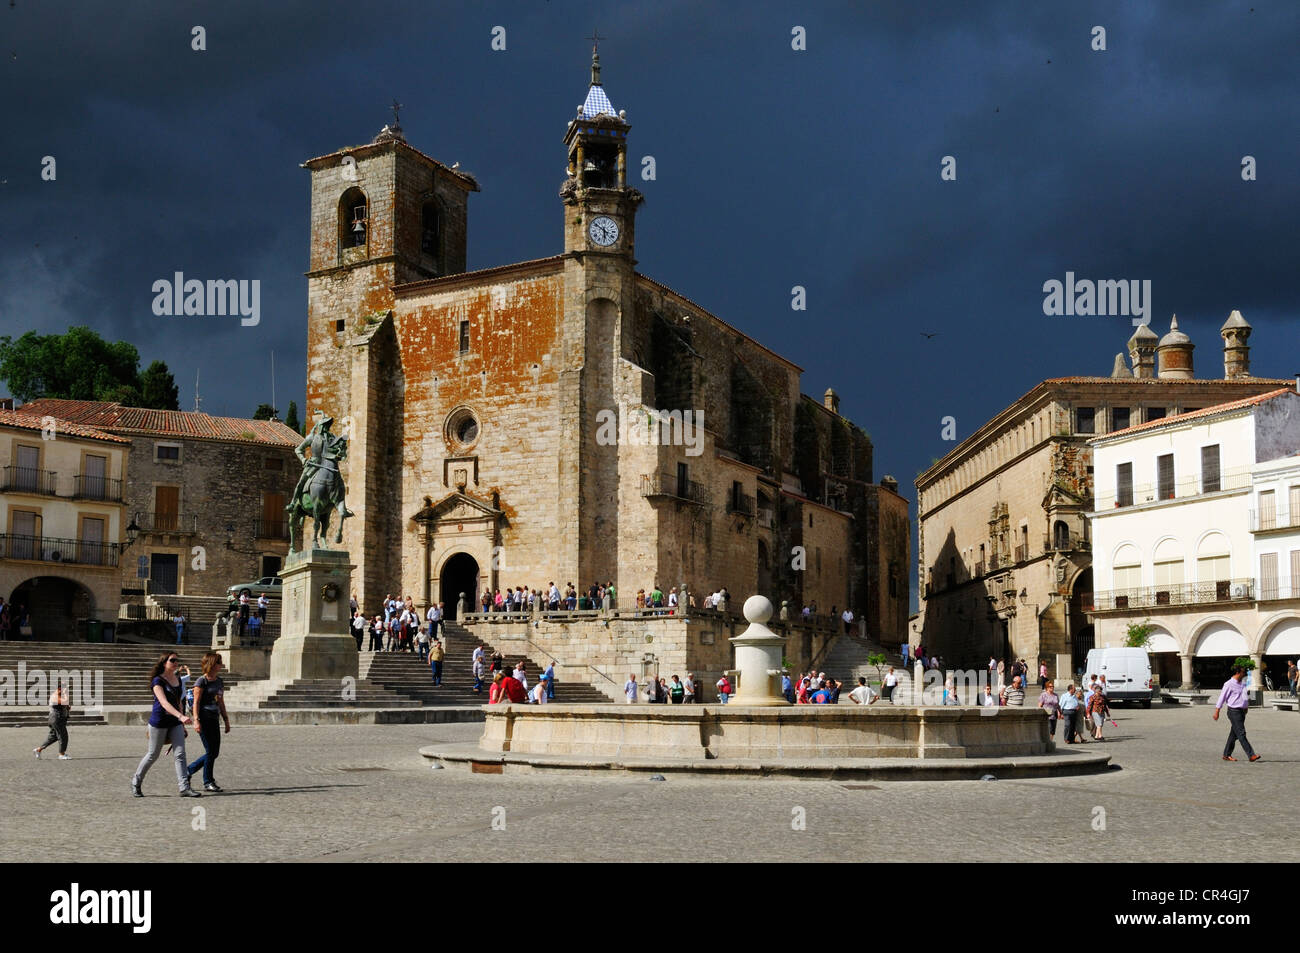 Plaza Mayor, city square with San Martin church, Trujillo, Extremadura, Spain, Europe Stock Photo